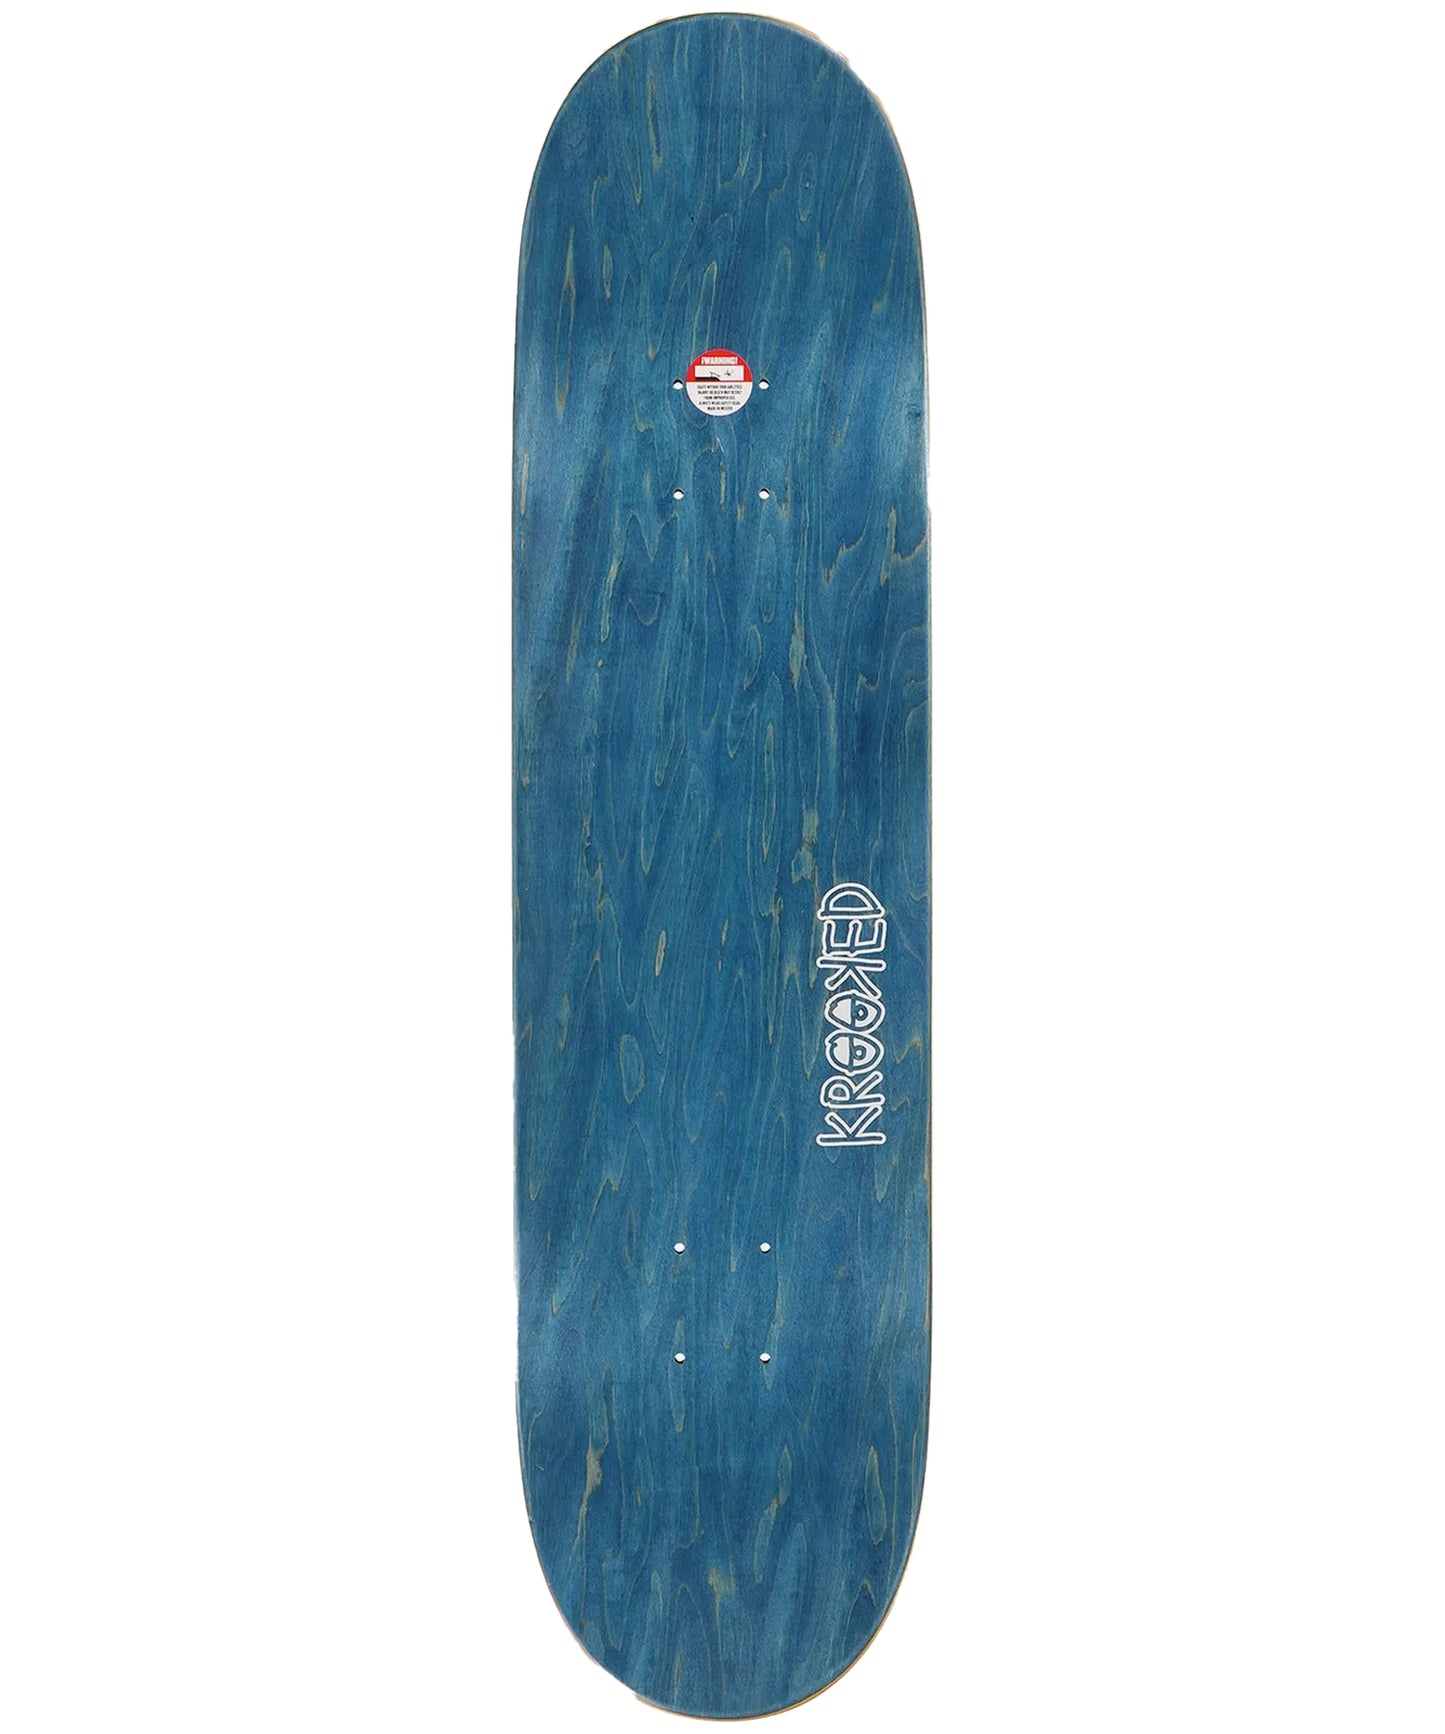 kroked-tabla-skate-cernicky-stack-8.06-pulgadas-modelo-profesional-calidad-y-durabilidad